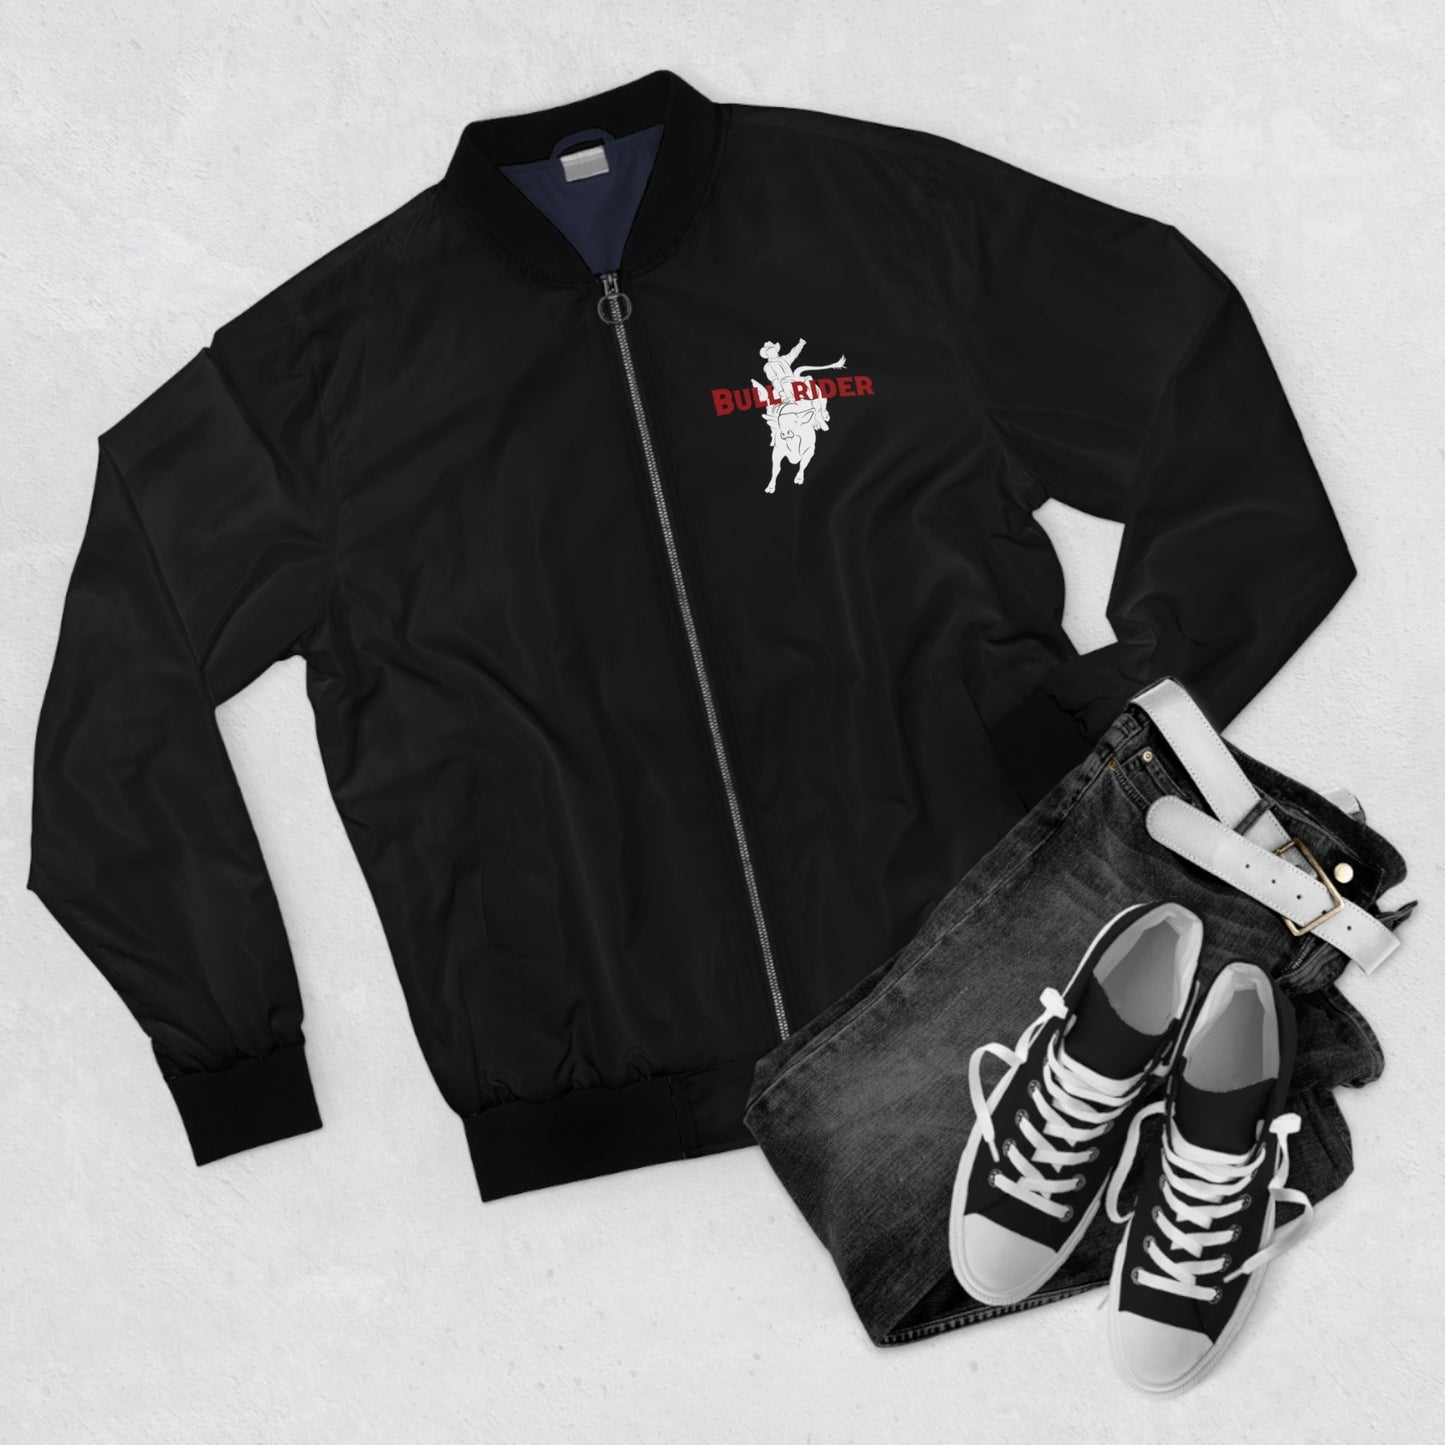 Custom Bull Riding Bomber Jacket With State Outline on the Back, Bull Rider Gift - FlooredByArt